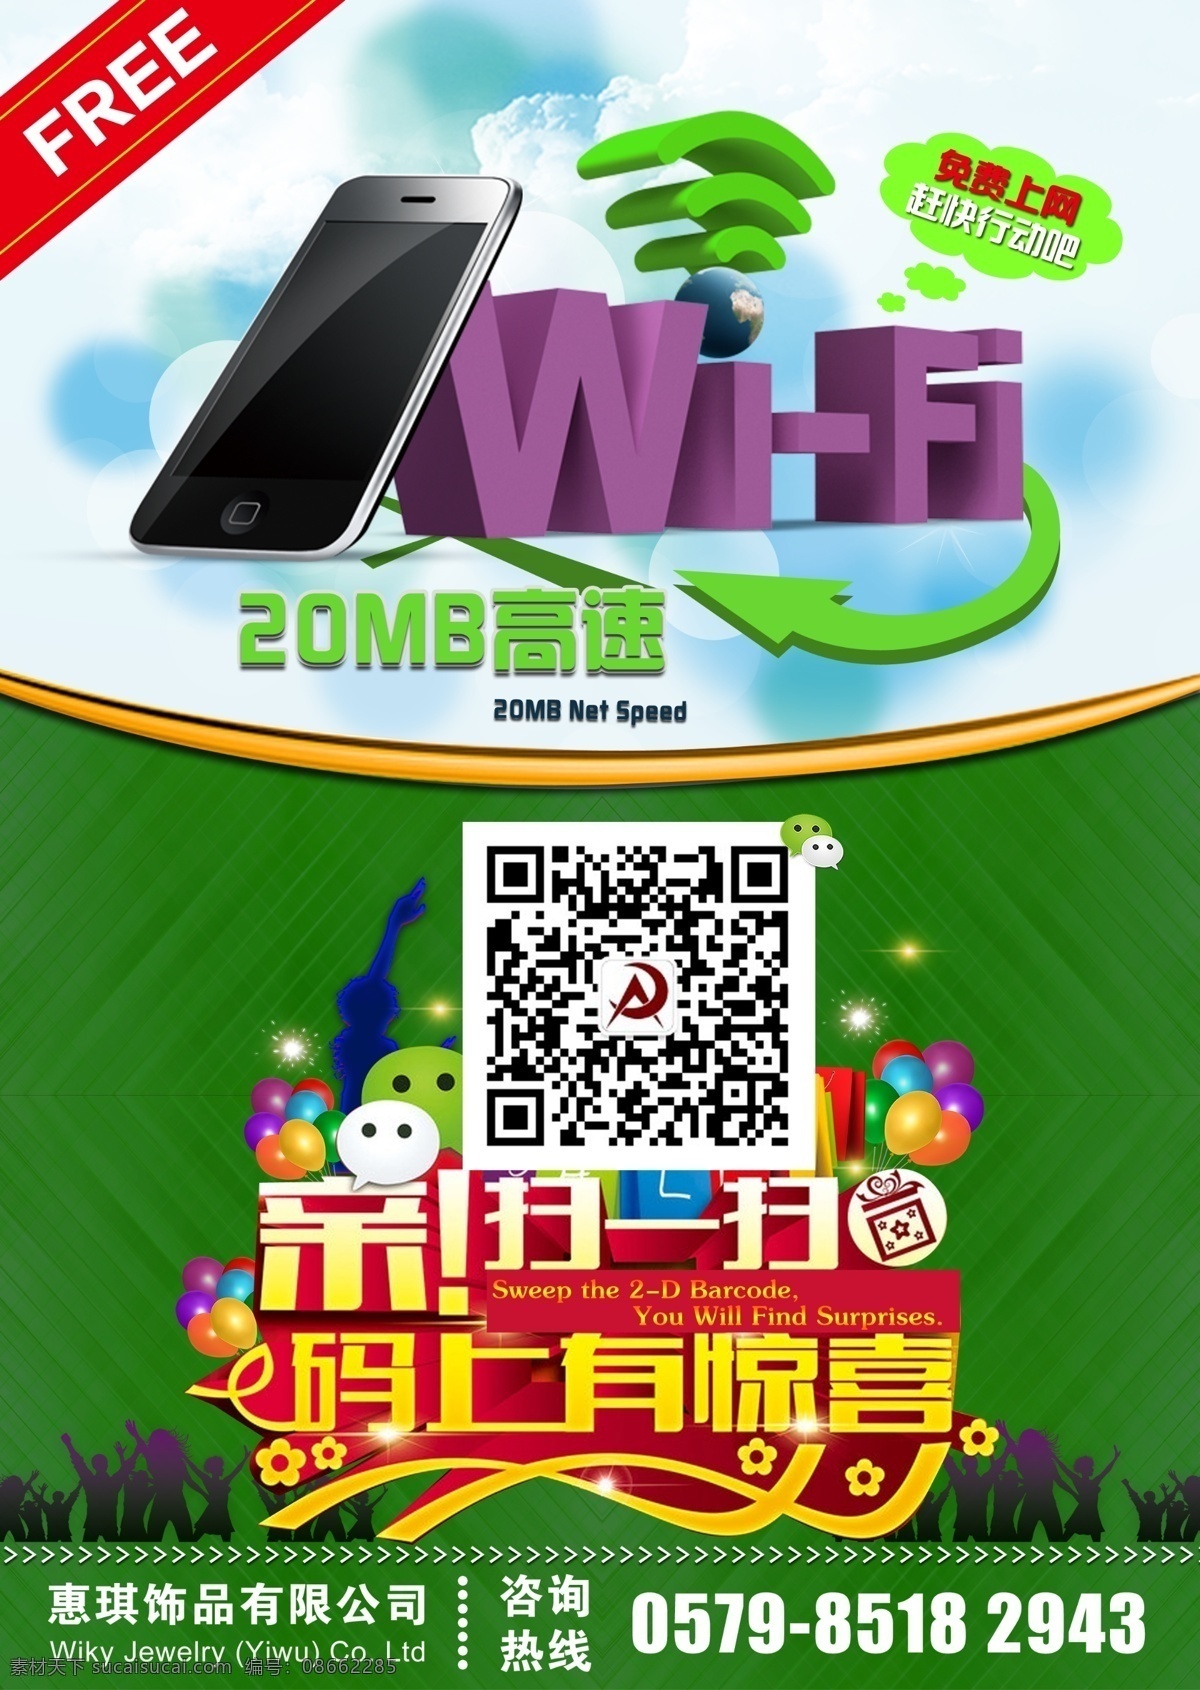 免费wifi 宽带 移动上网 免流量 wlan 免费上网 标识 手机上网 wifi 海报 现代科技 数码产品